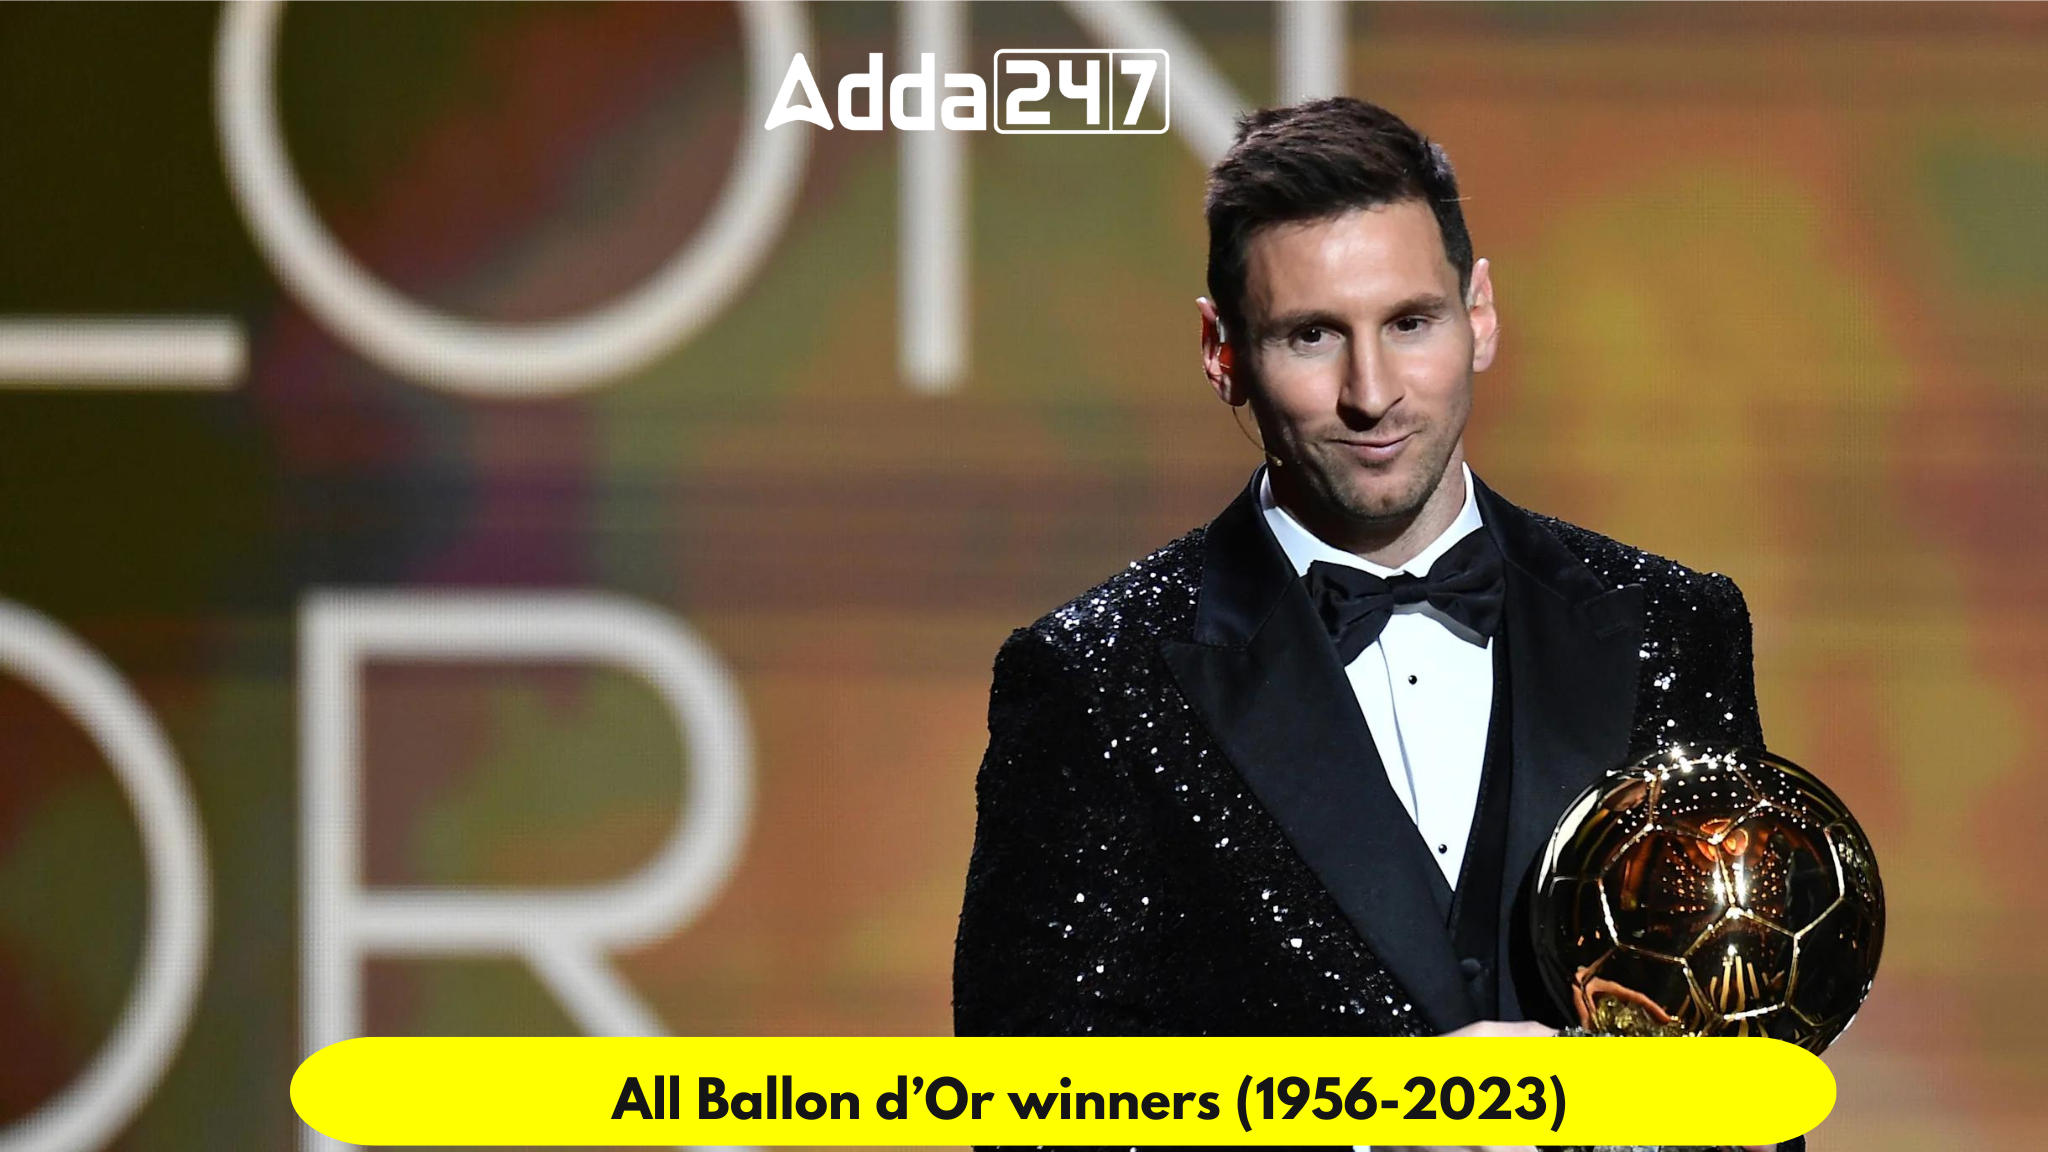 All Ballon d’Or winners (1956-2023)